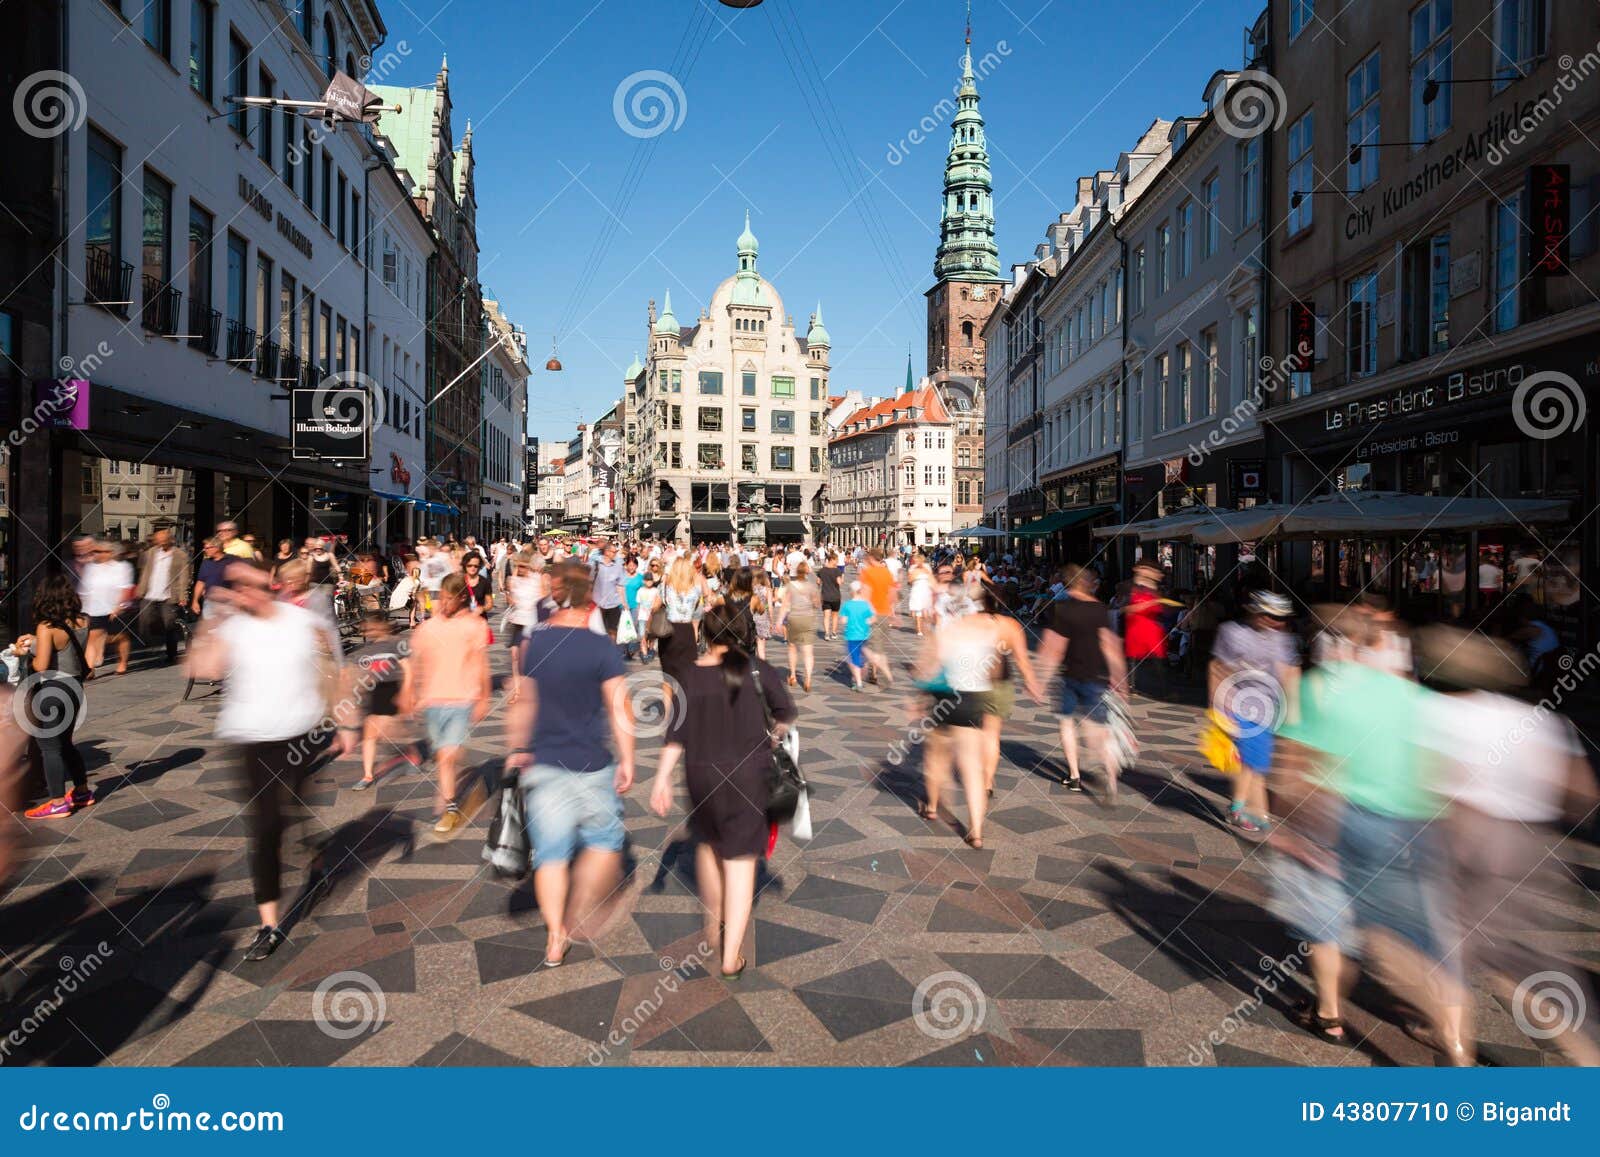 Pedestrians in Copenhagen editorial image. Image of people - 43807710